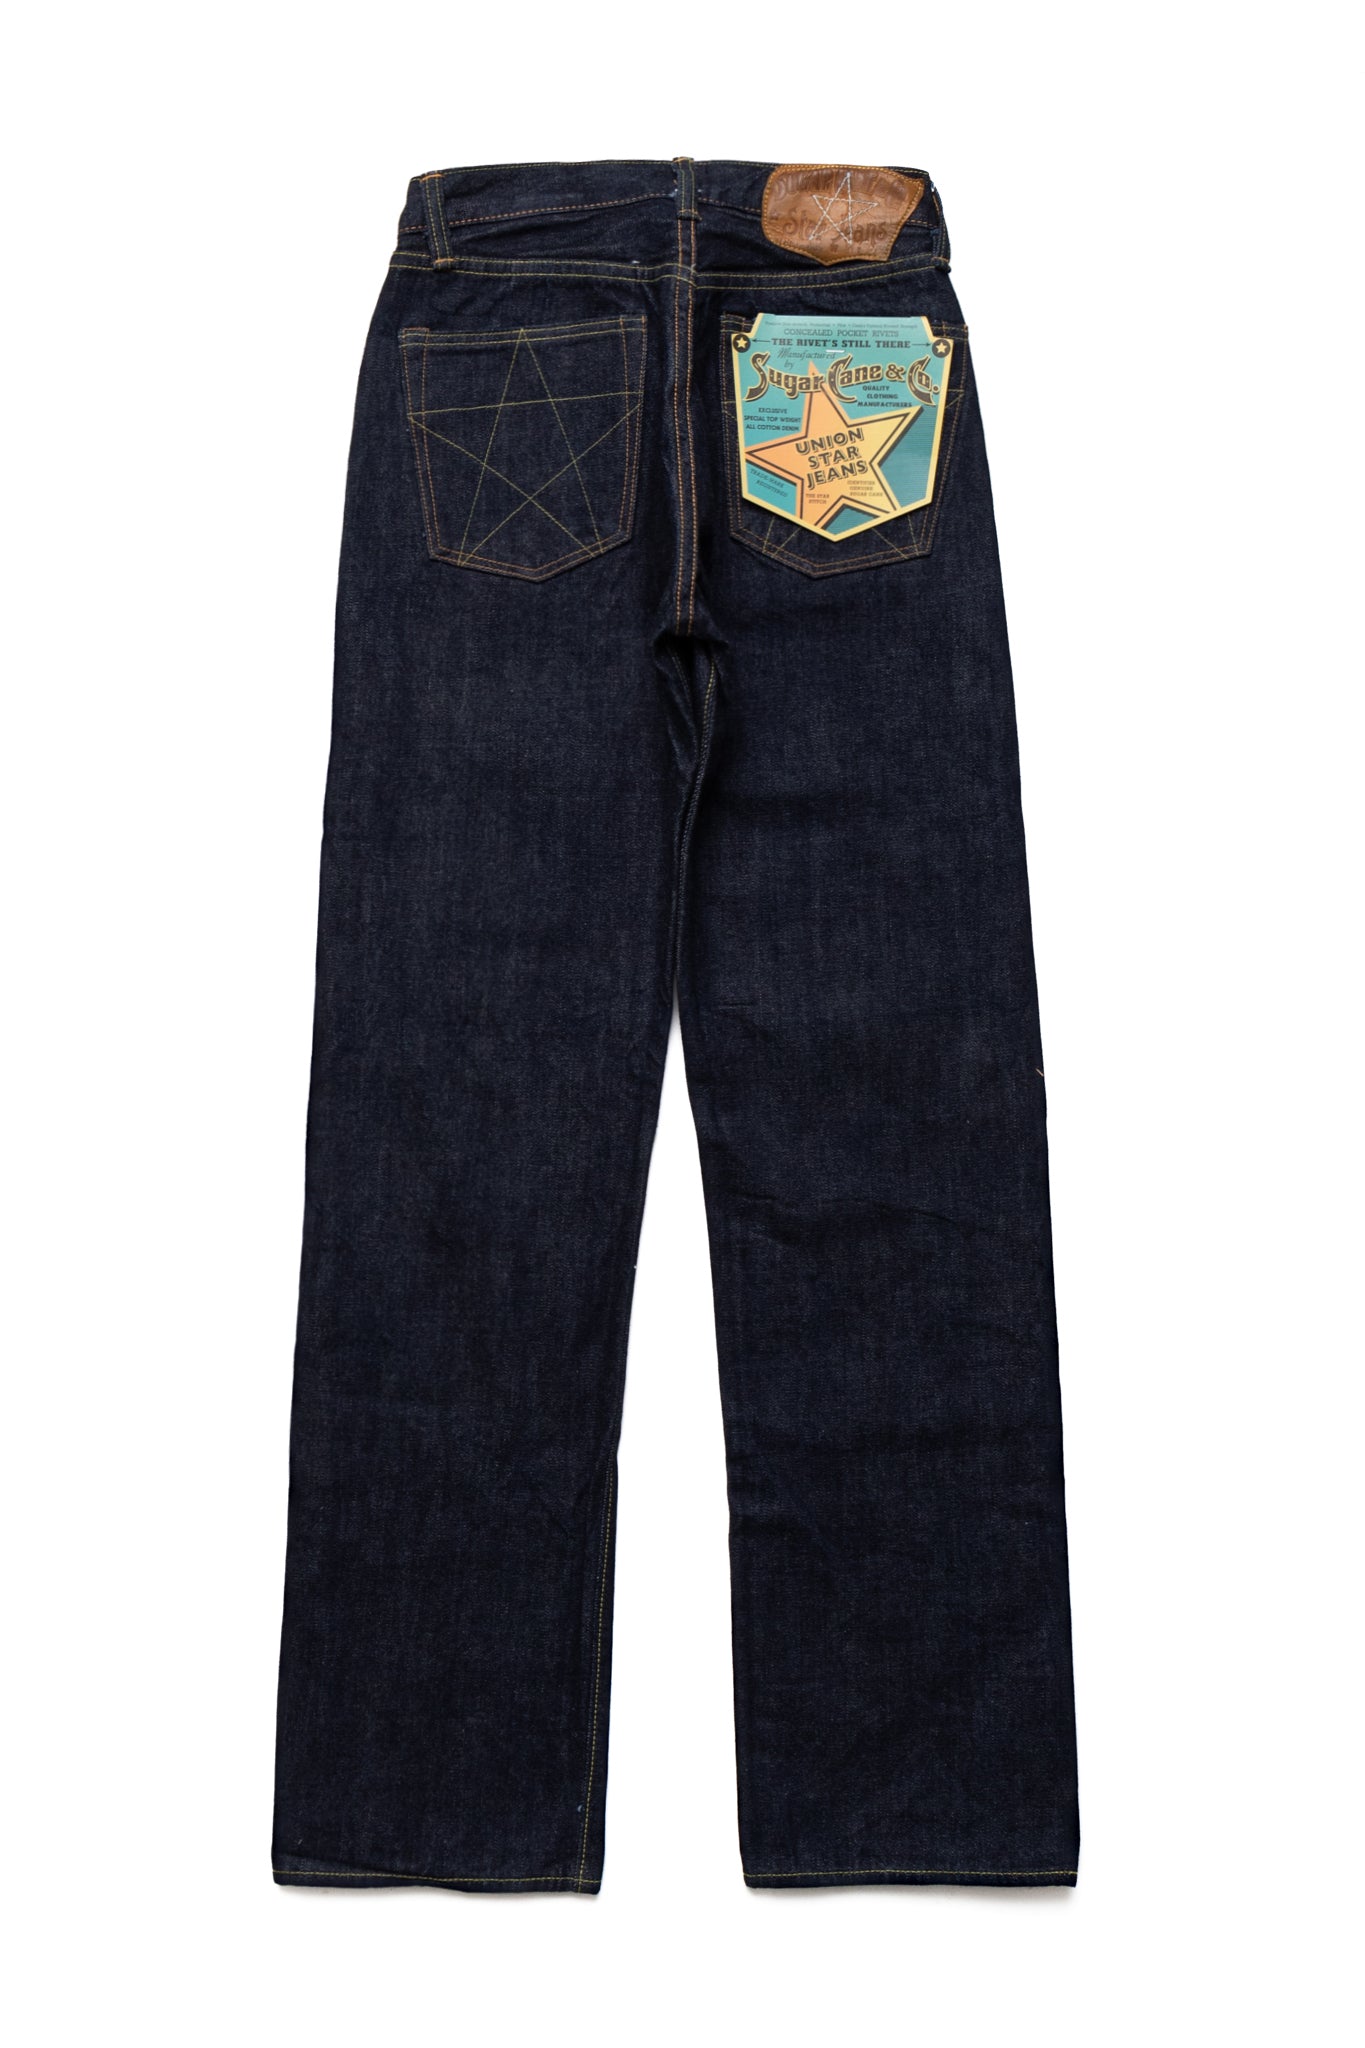 14.25oz Denim Union Star Jeans